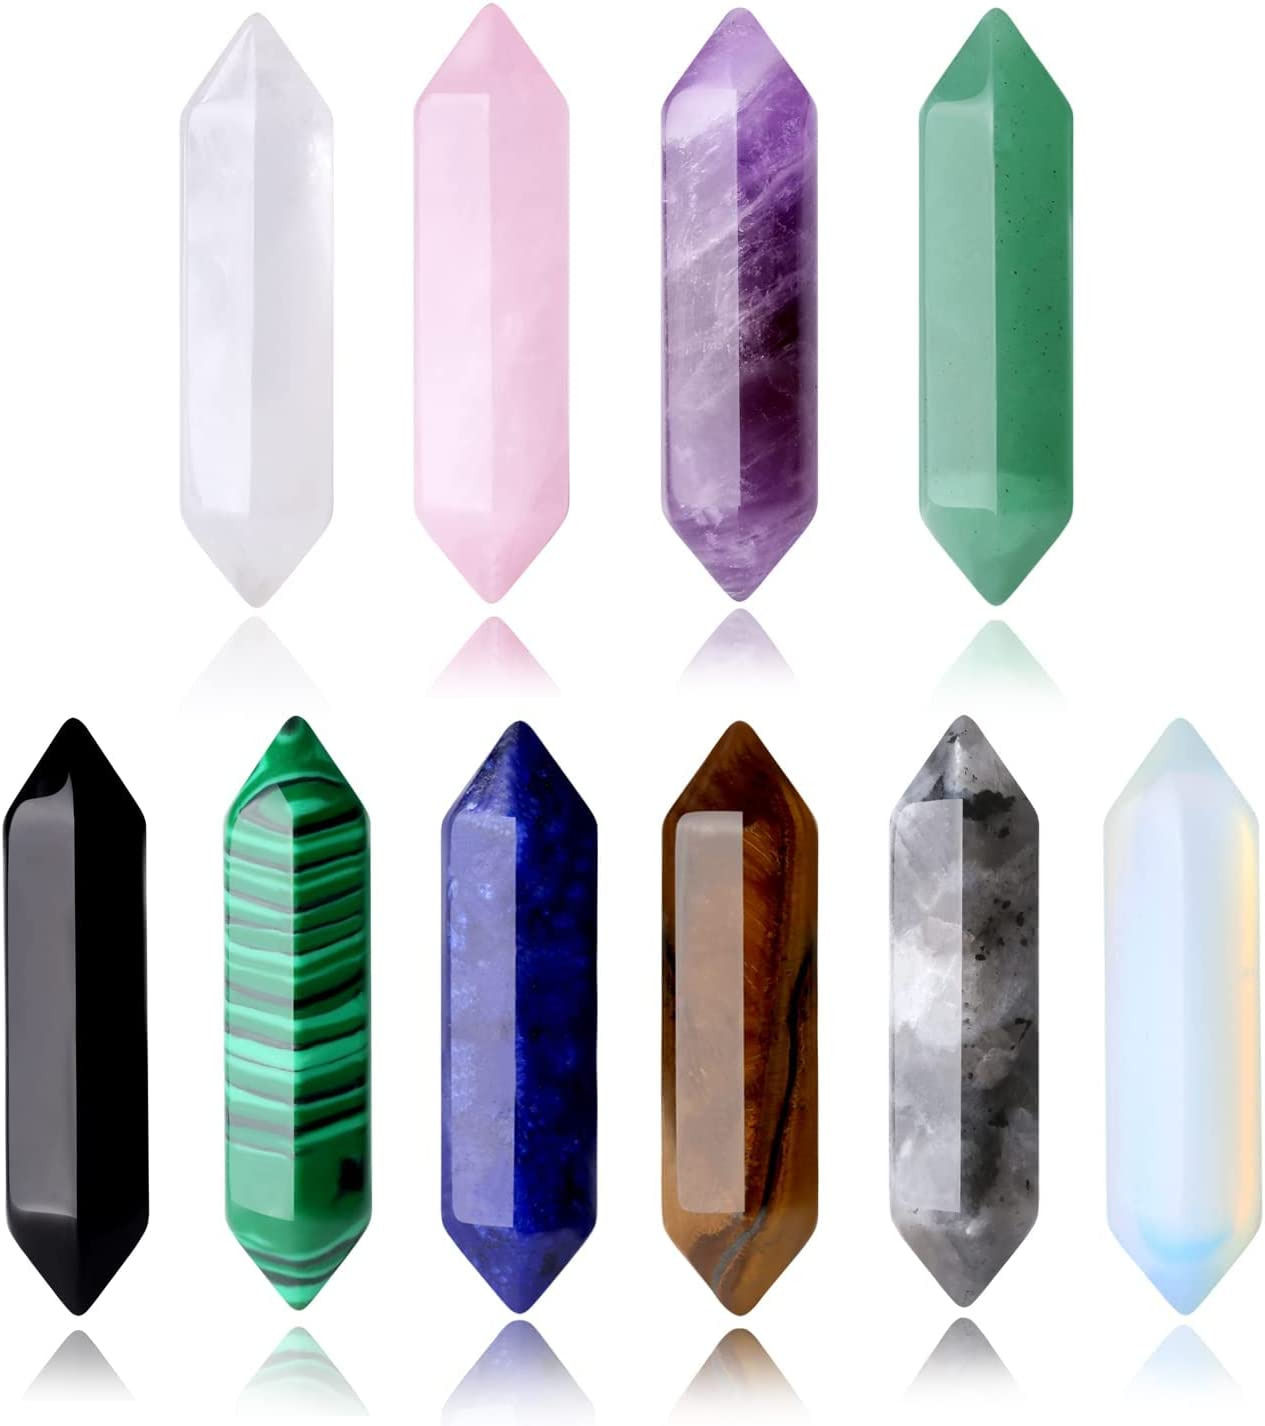 10PCS Healing Crystals Stones Sets Natural Amethyst Rose Quartz Clear Quartz Tig